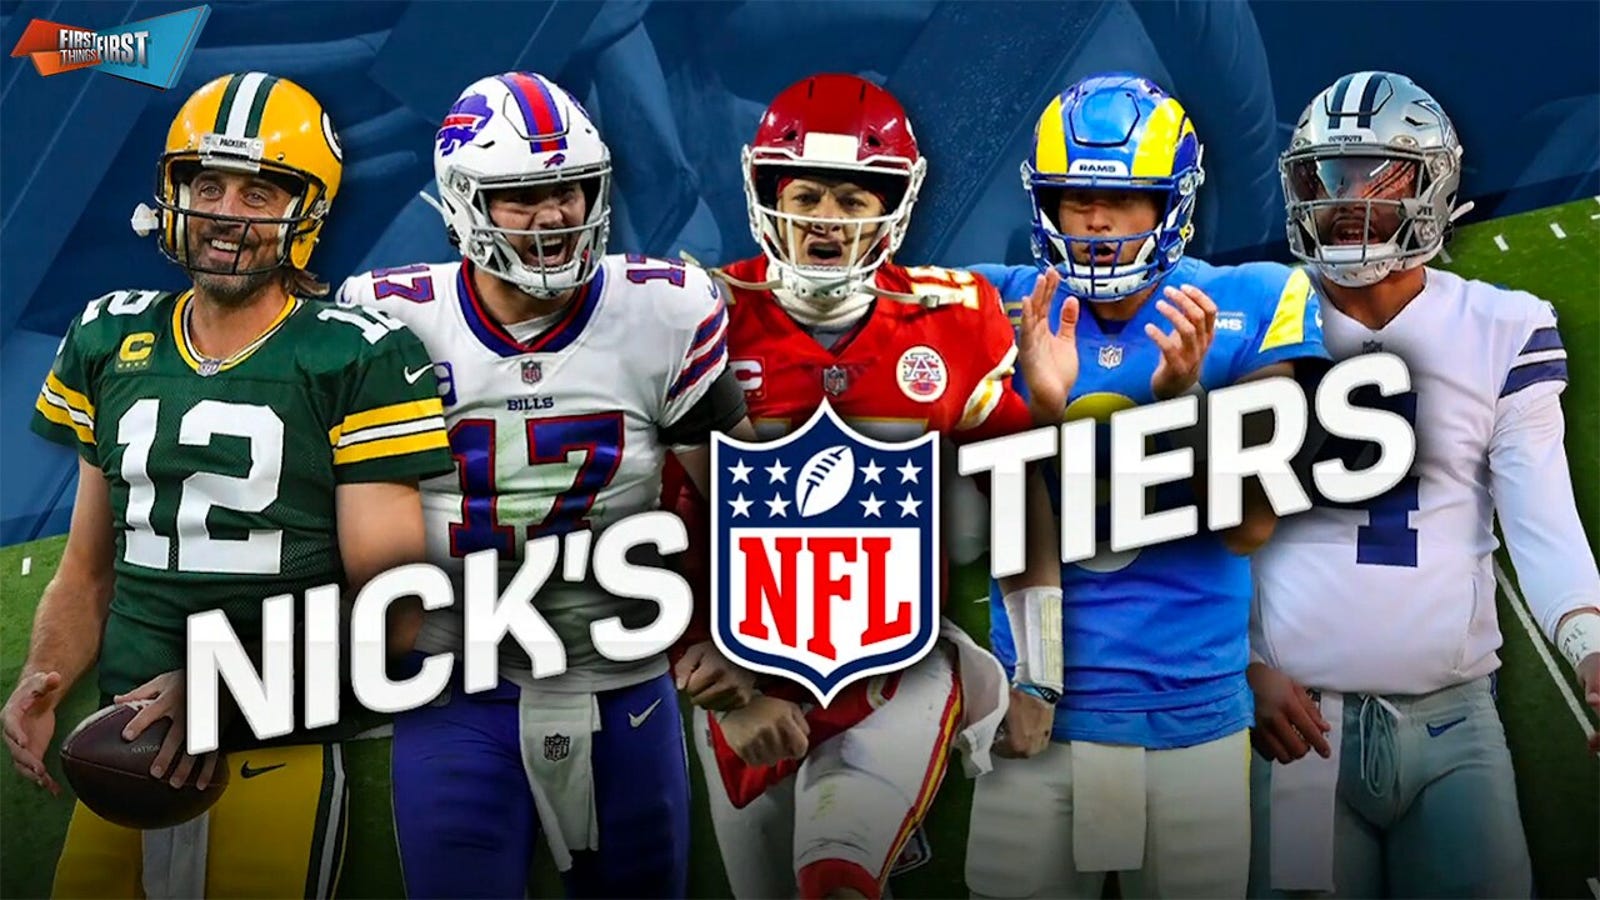 Chiefs & Bills headline Nick's NFL tier heading into Week 3